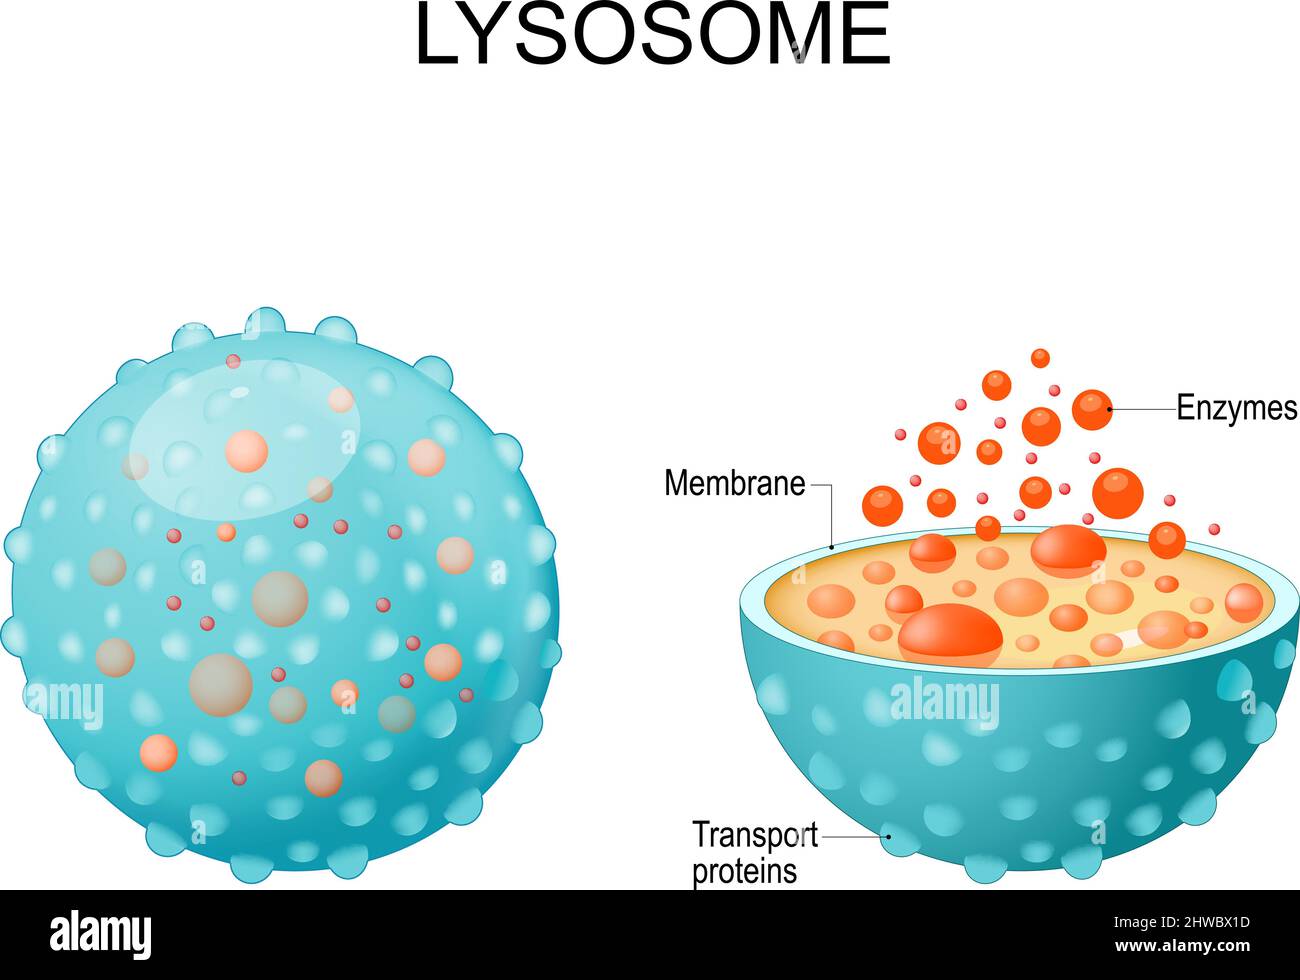 Lysosososososososome. Aussehen, Außen- und Innenansicht. Querschnitt und Anatomie des Lysosomes: Hydrolytische Enzyme, Membran- und Transportproteine Stock Vektor